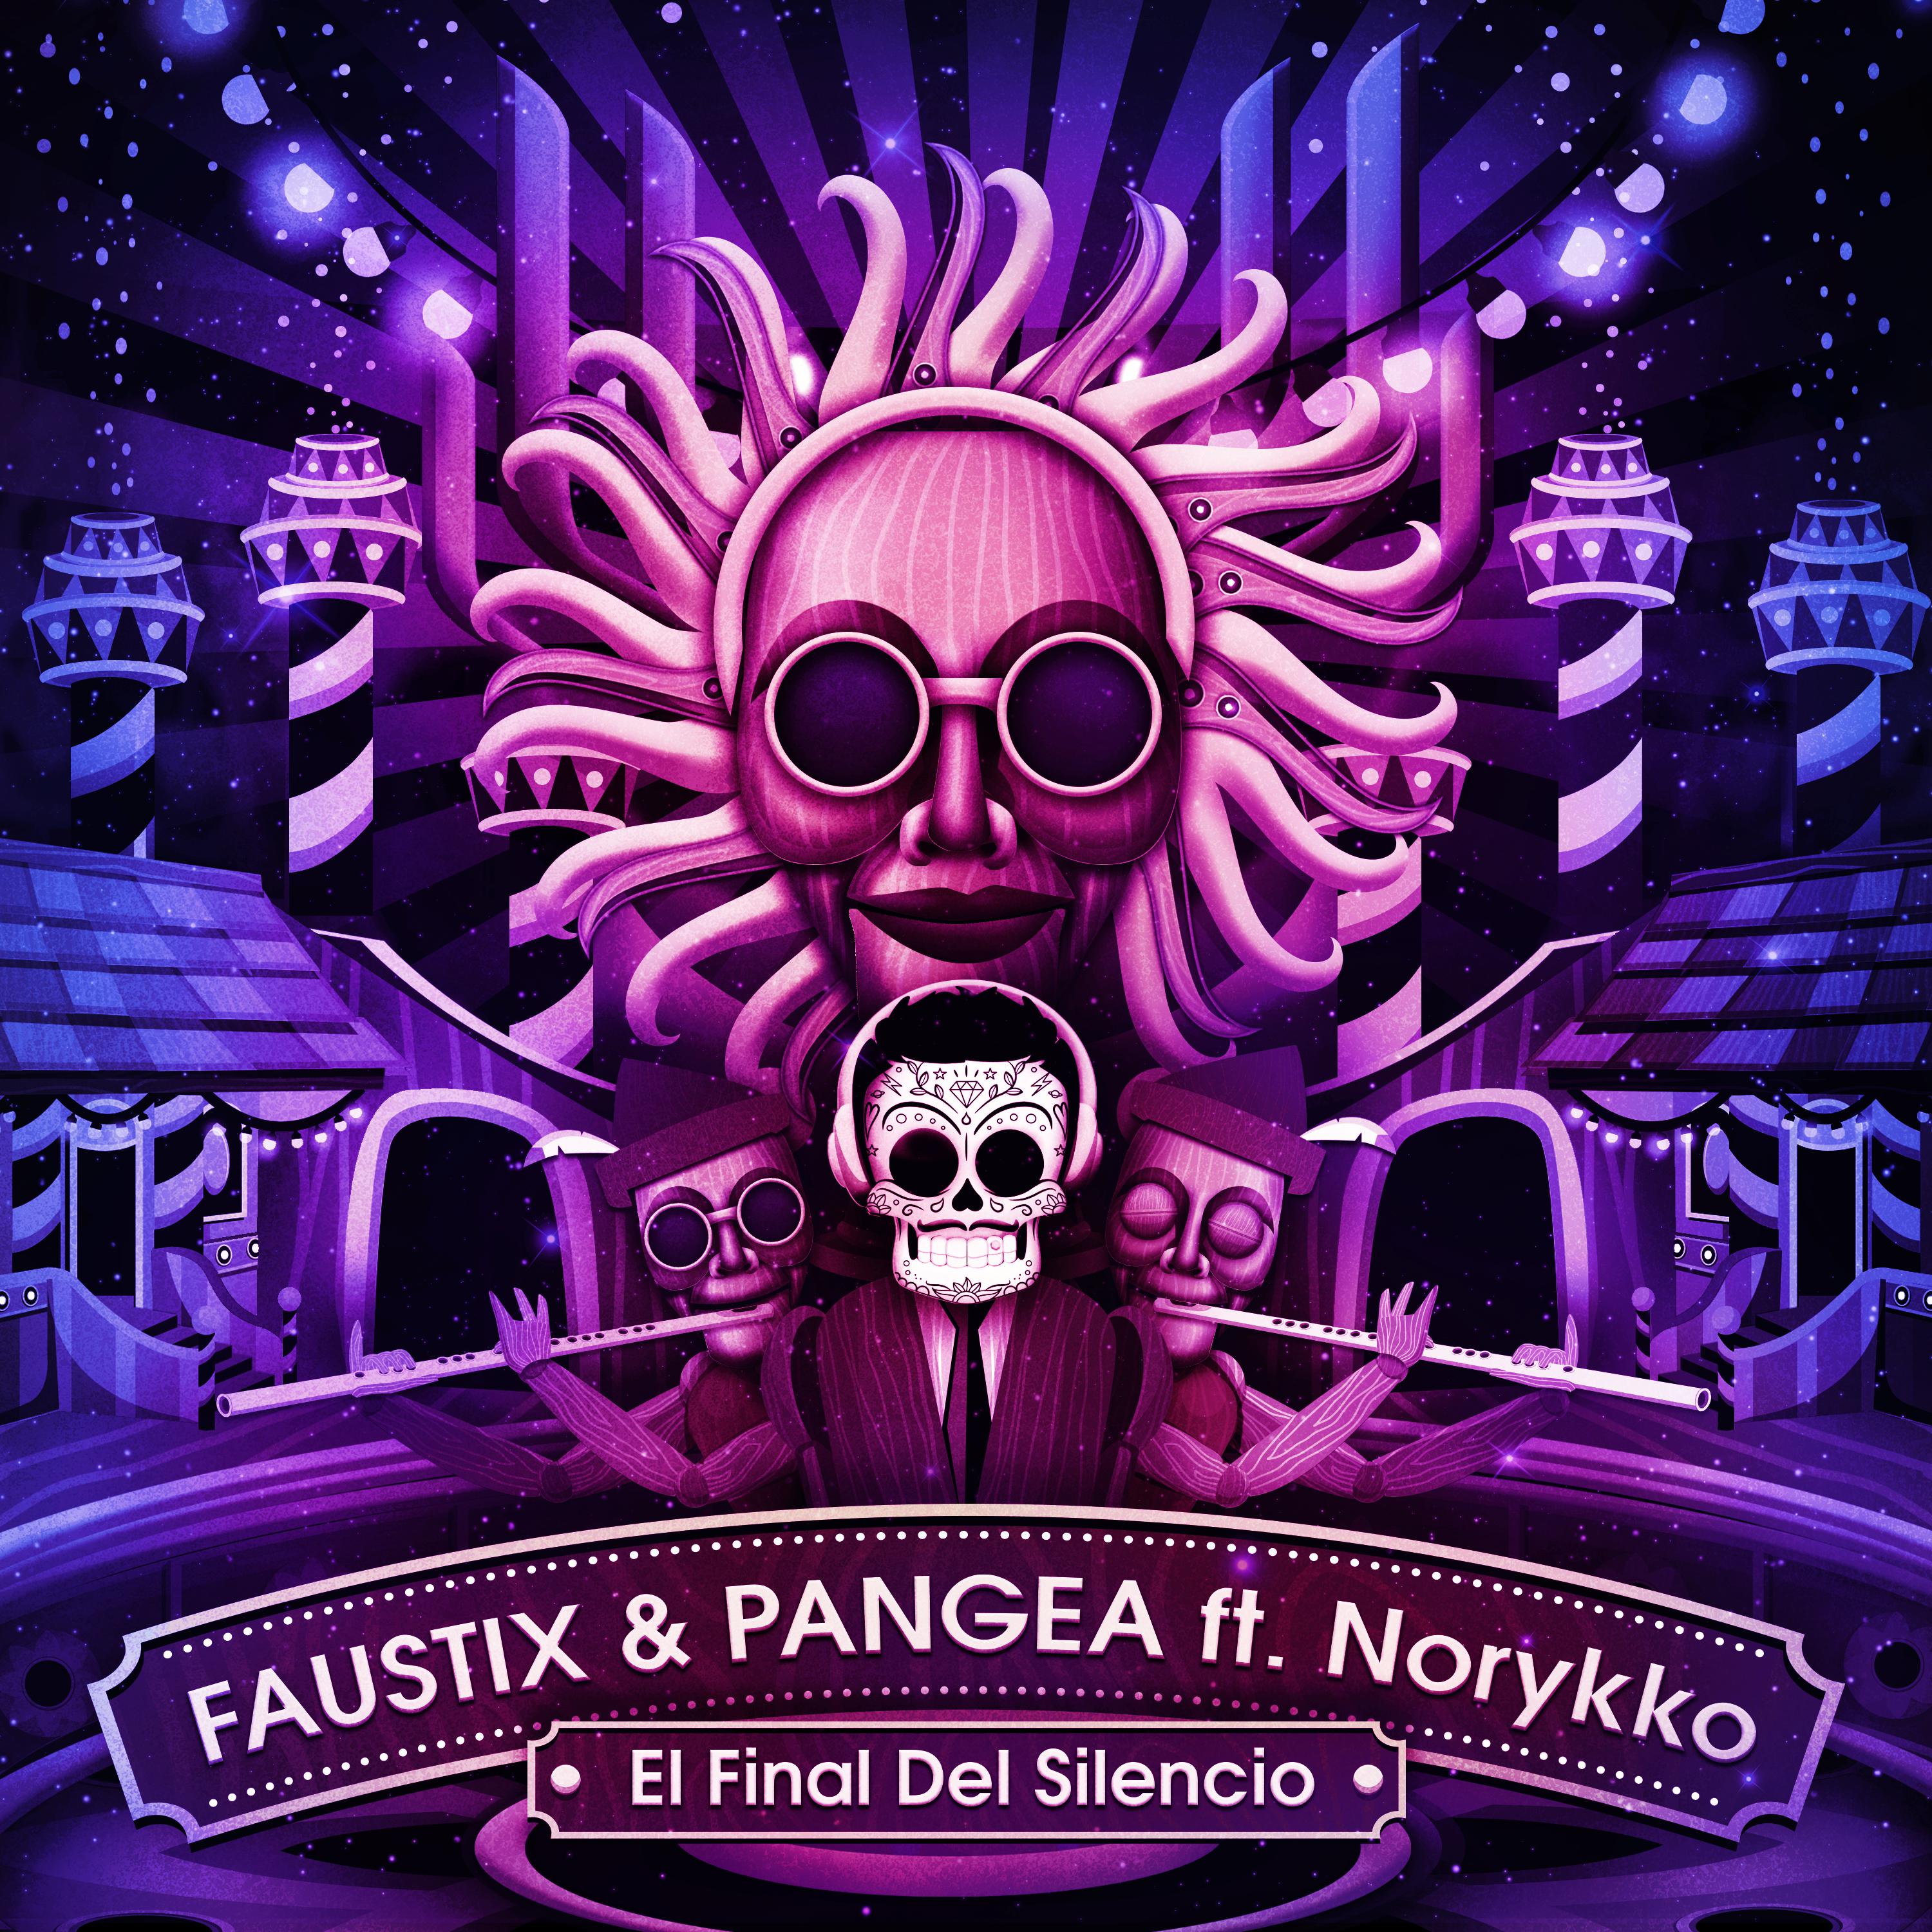 Faustix - El Final Del Silencio (feat. Norykko)